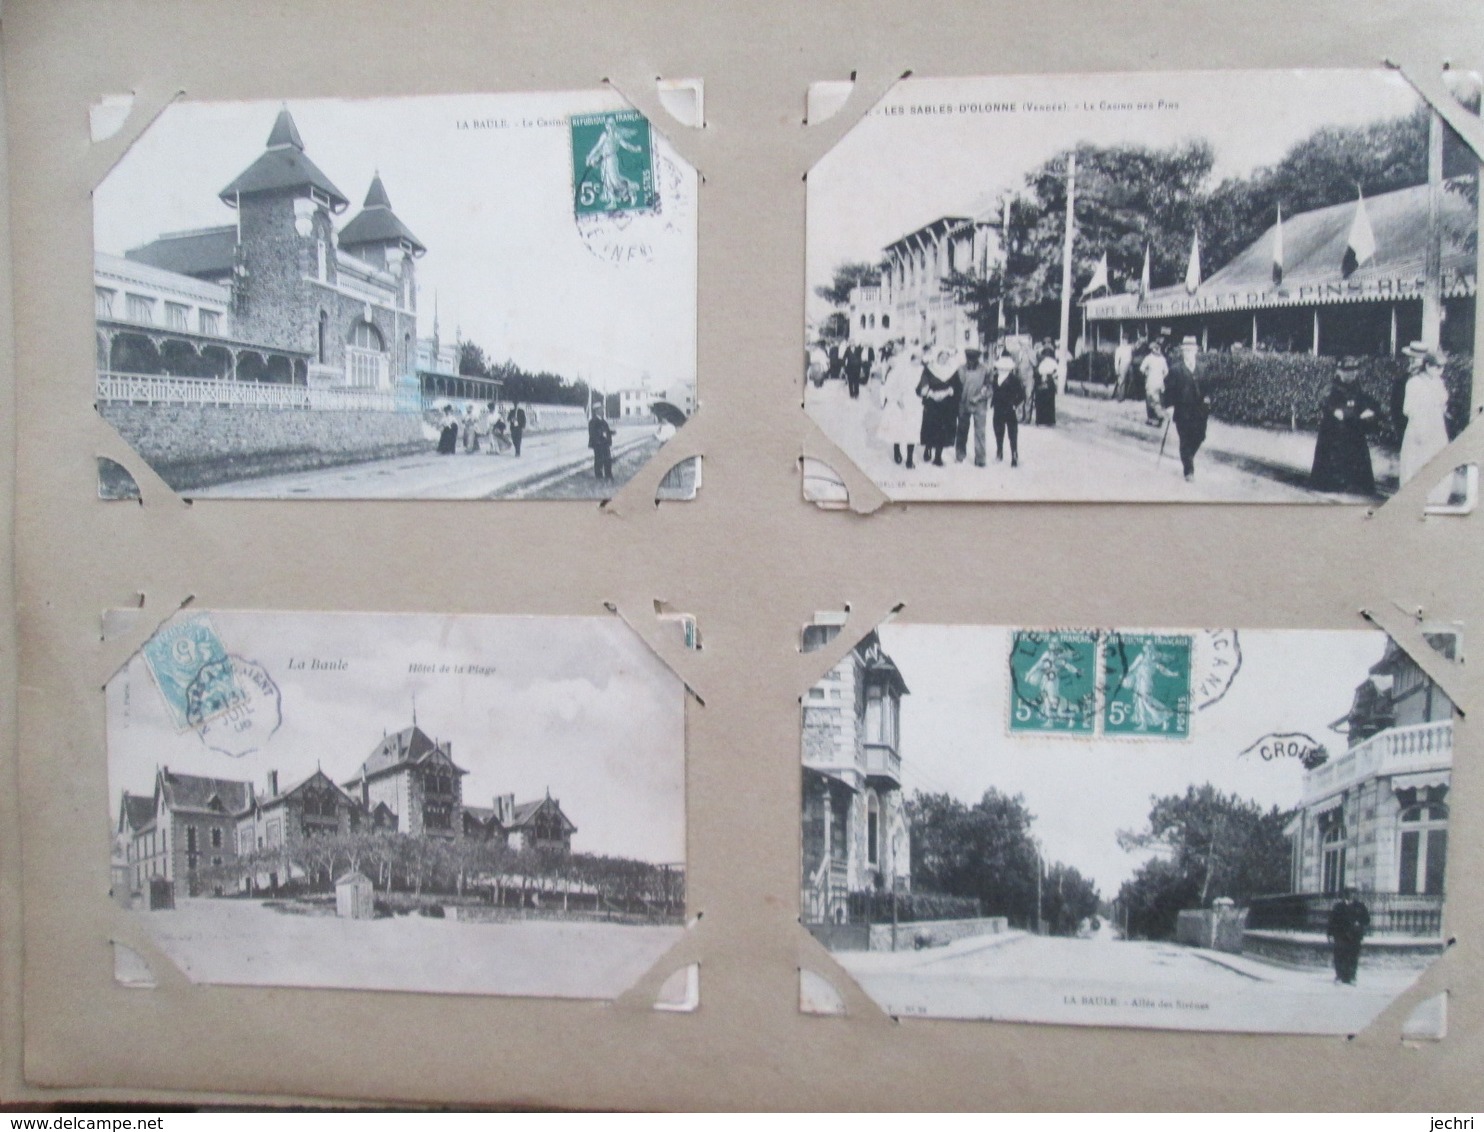 album  de cartes postales anciennes  de france dont villages  et animations  250 cartes